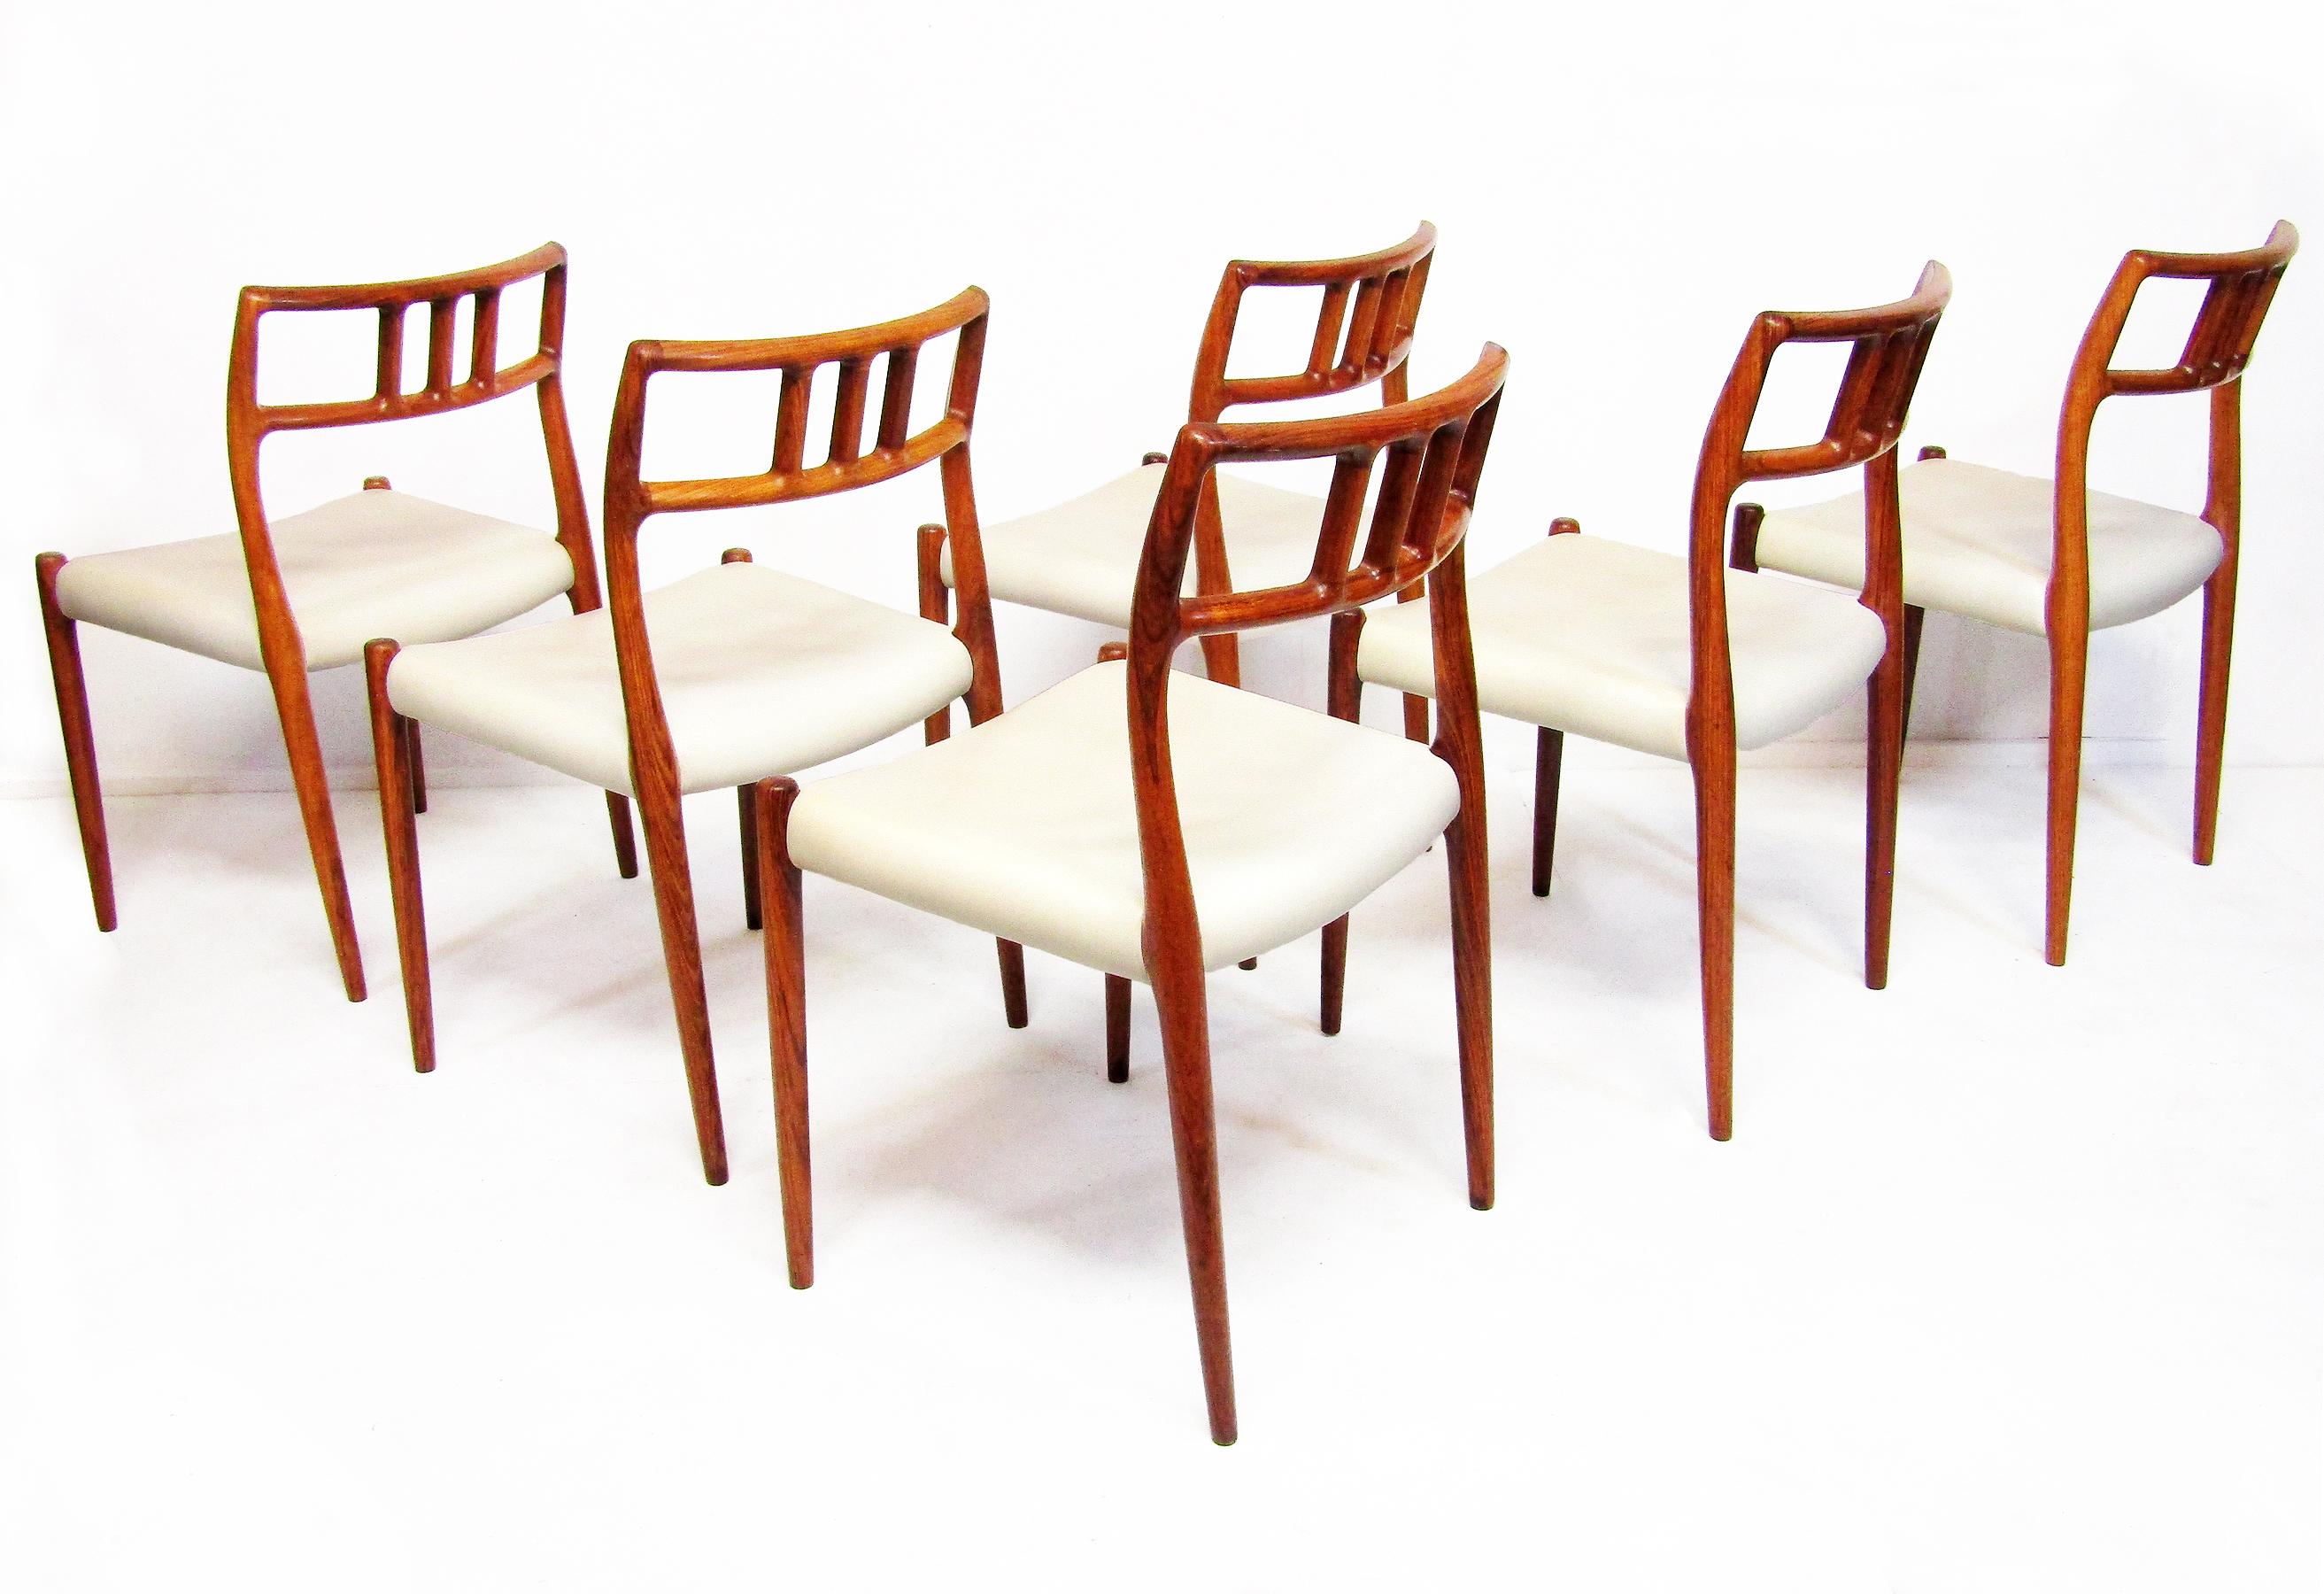 Sechs dänische Stühle „Modell 79“ aus Palisanderholz von Niels Moller, um 1960 (Hartholz)